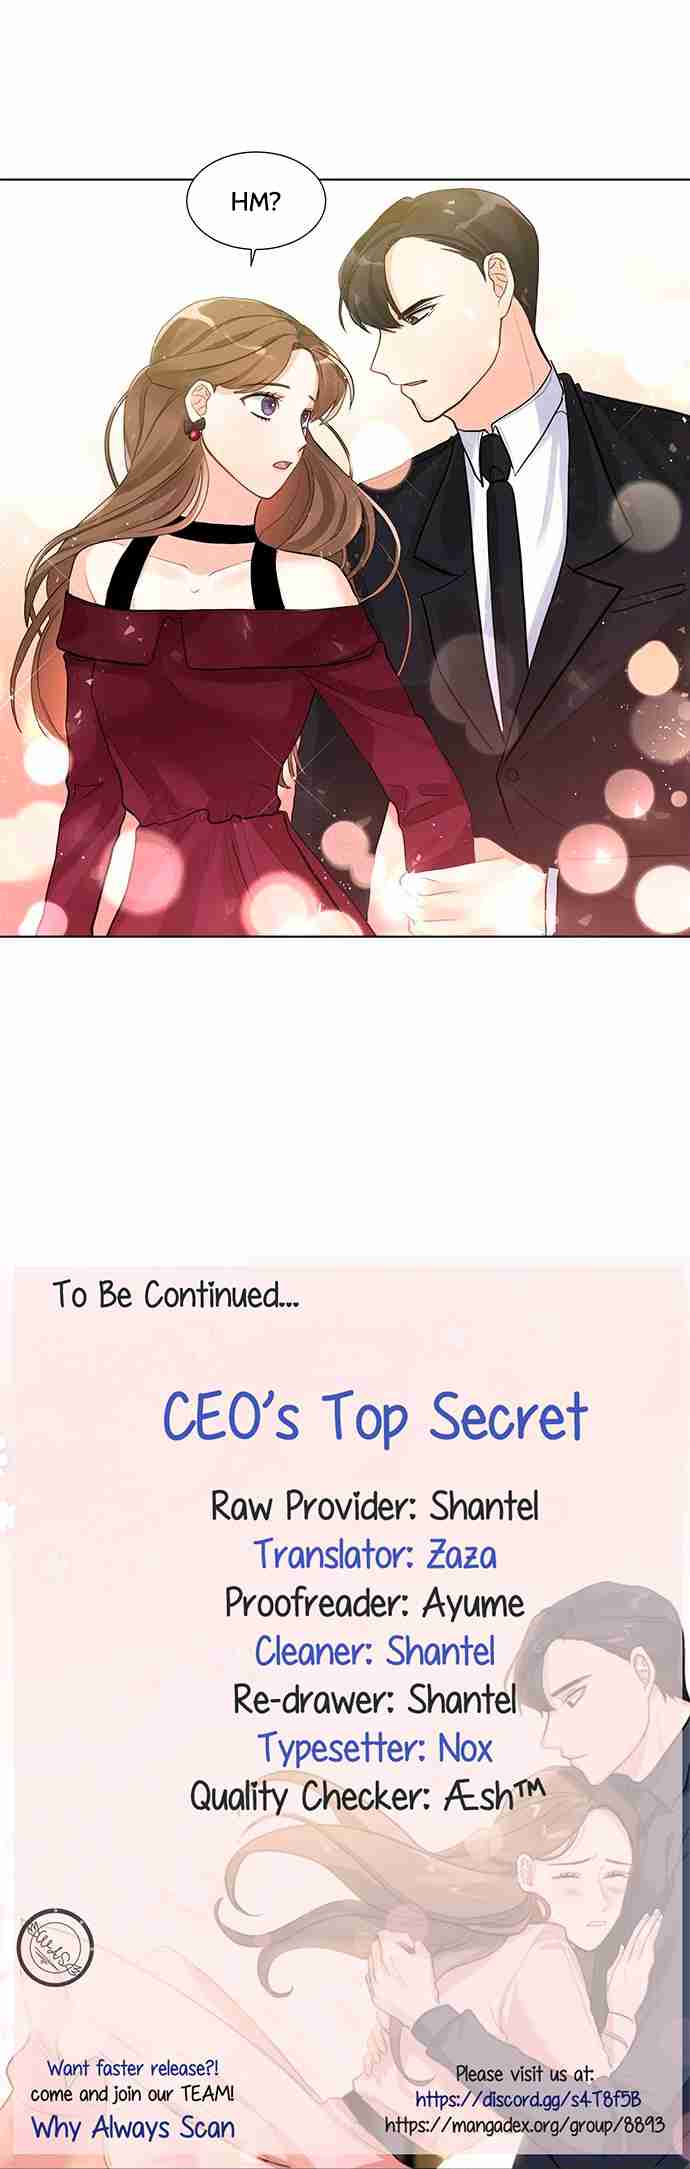 CEO's Top Secret 7